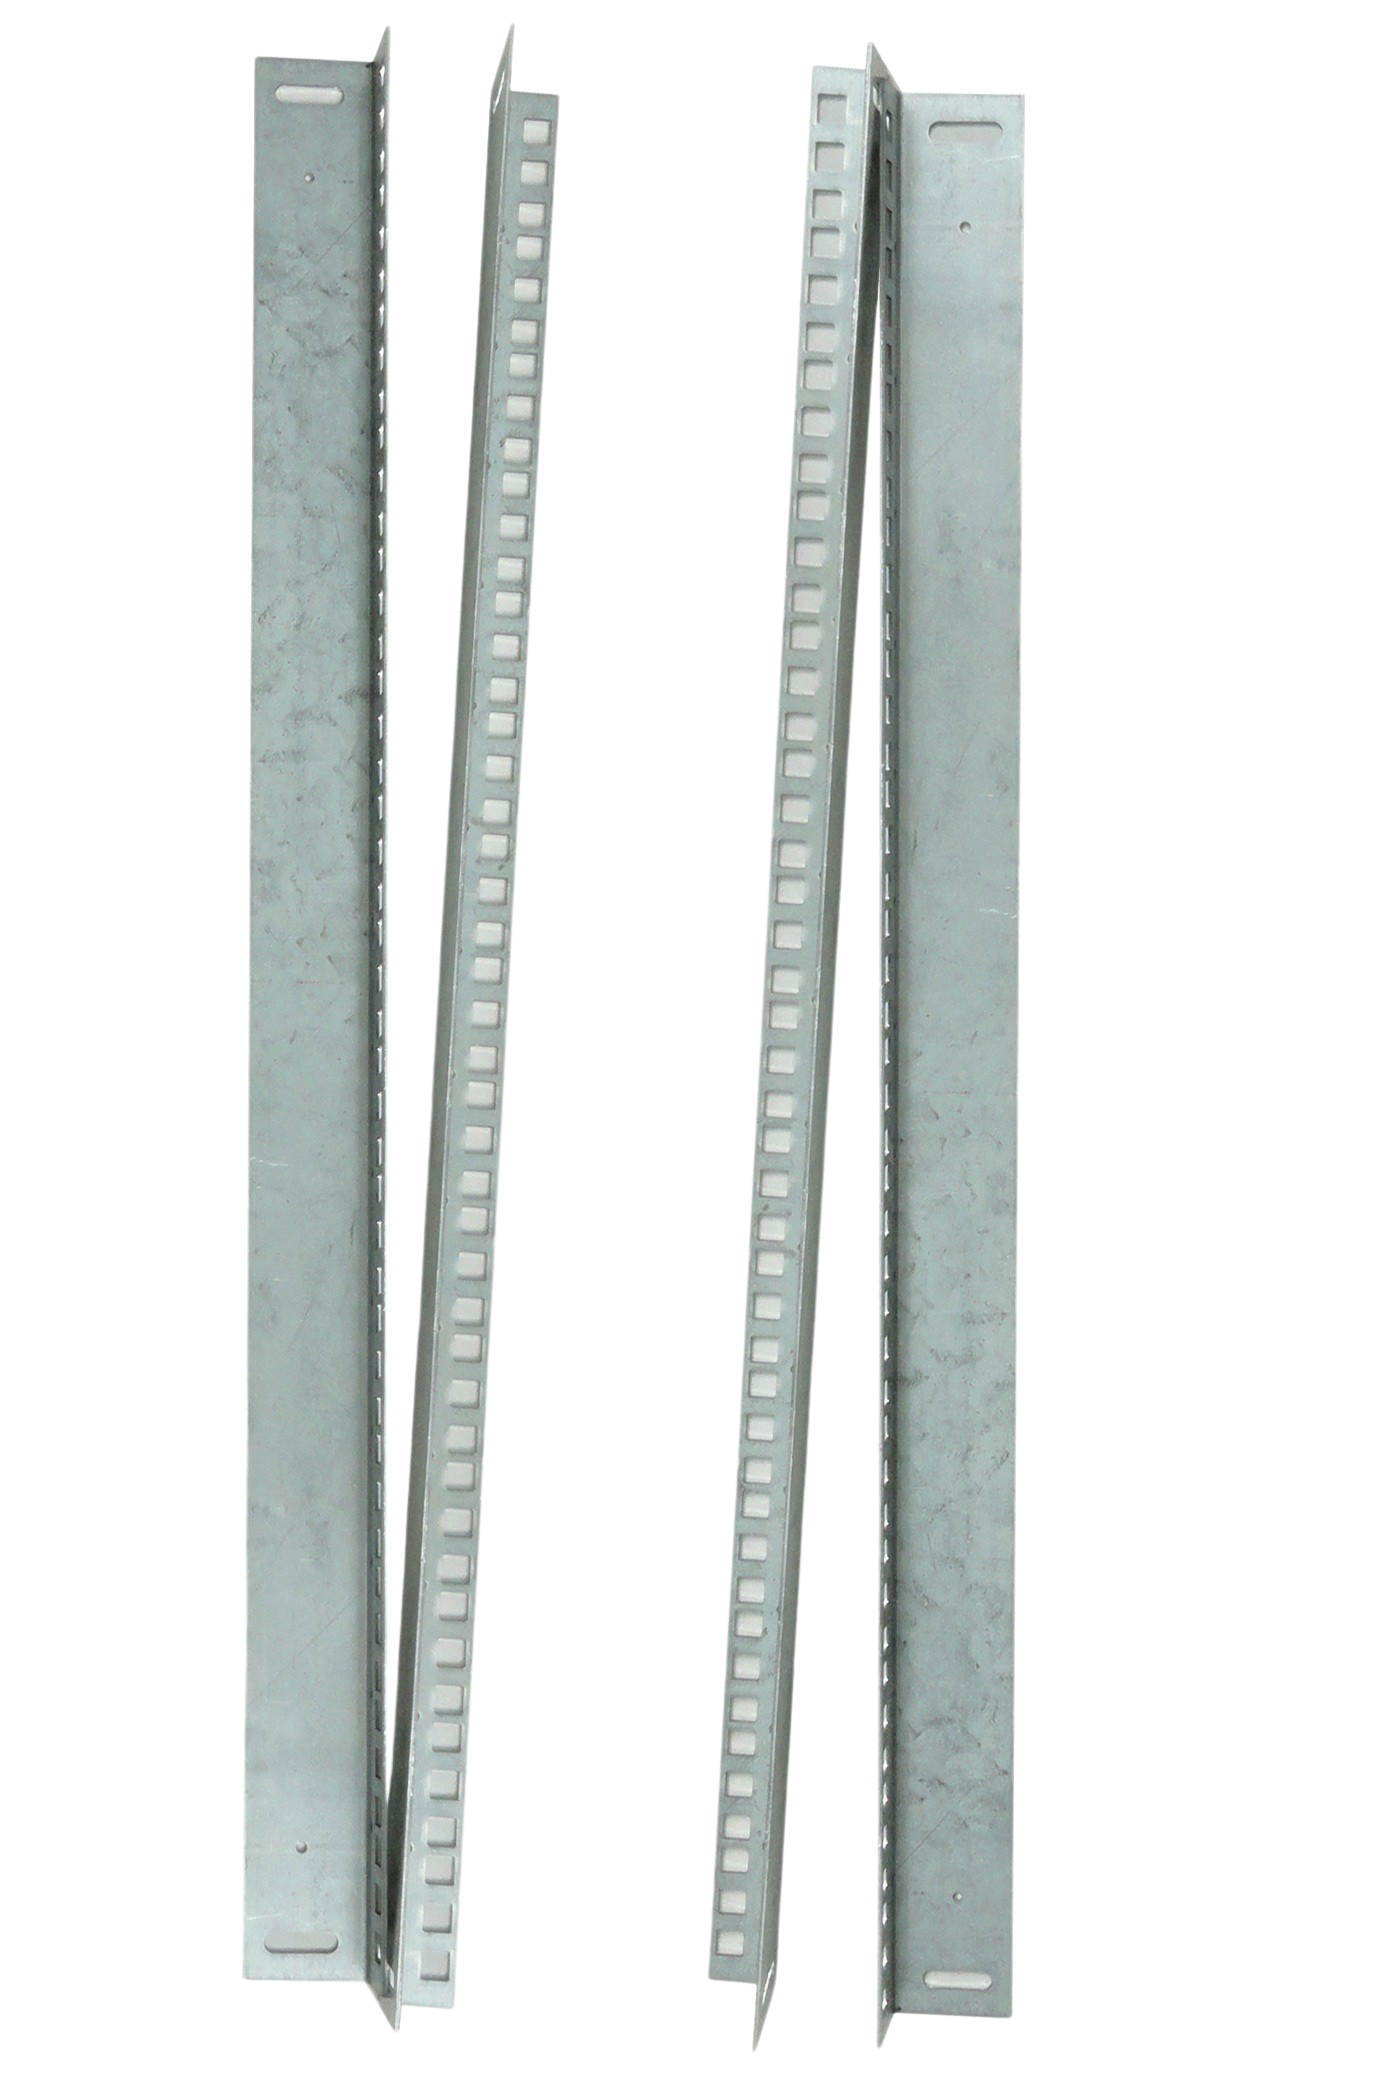  Комплект вертикальных юнитовых направляющих (2 шт) для шкафов серии ШРН высотой 12U от ЦМО